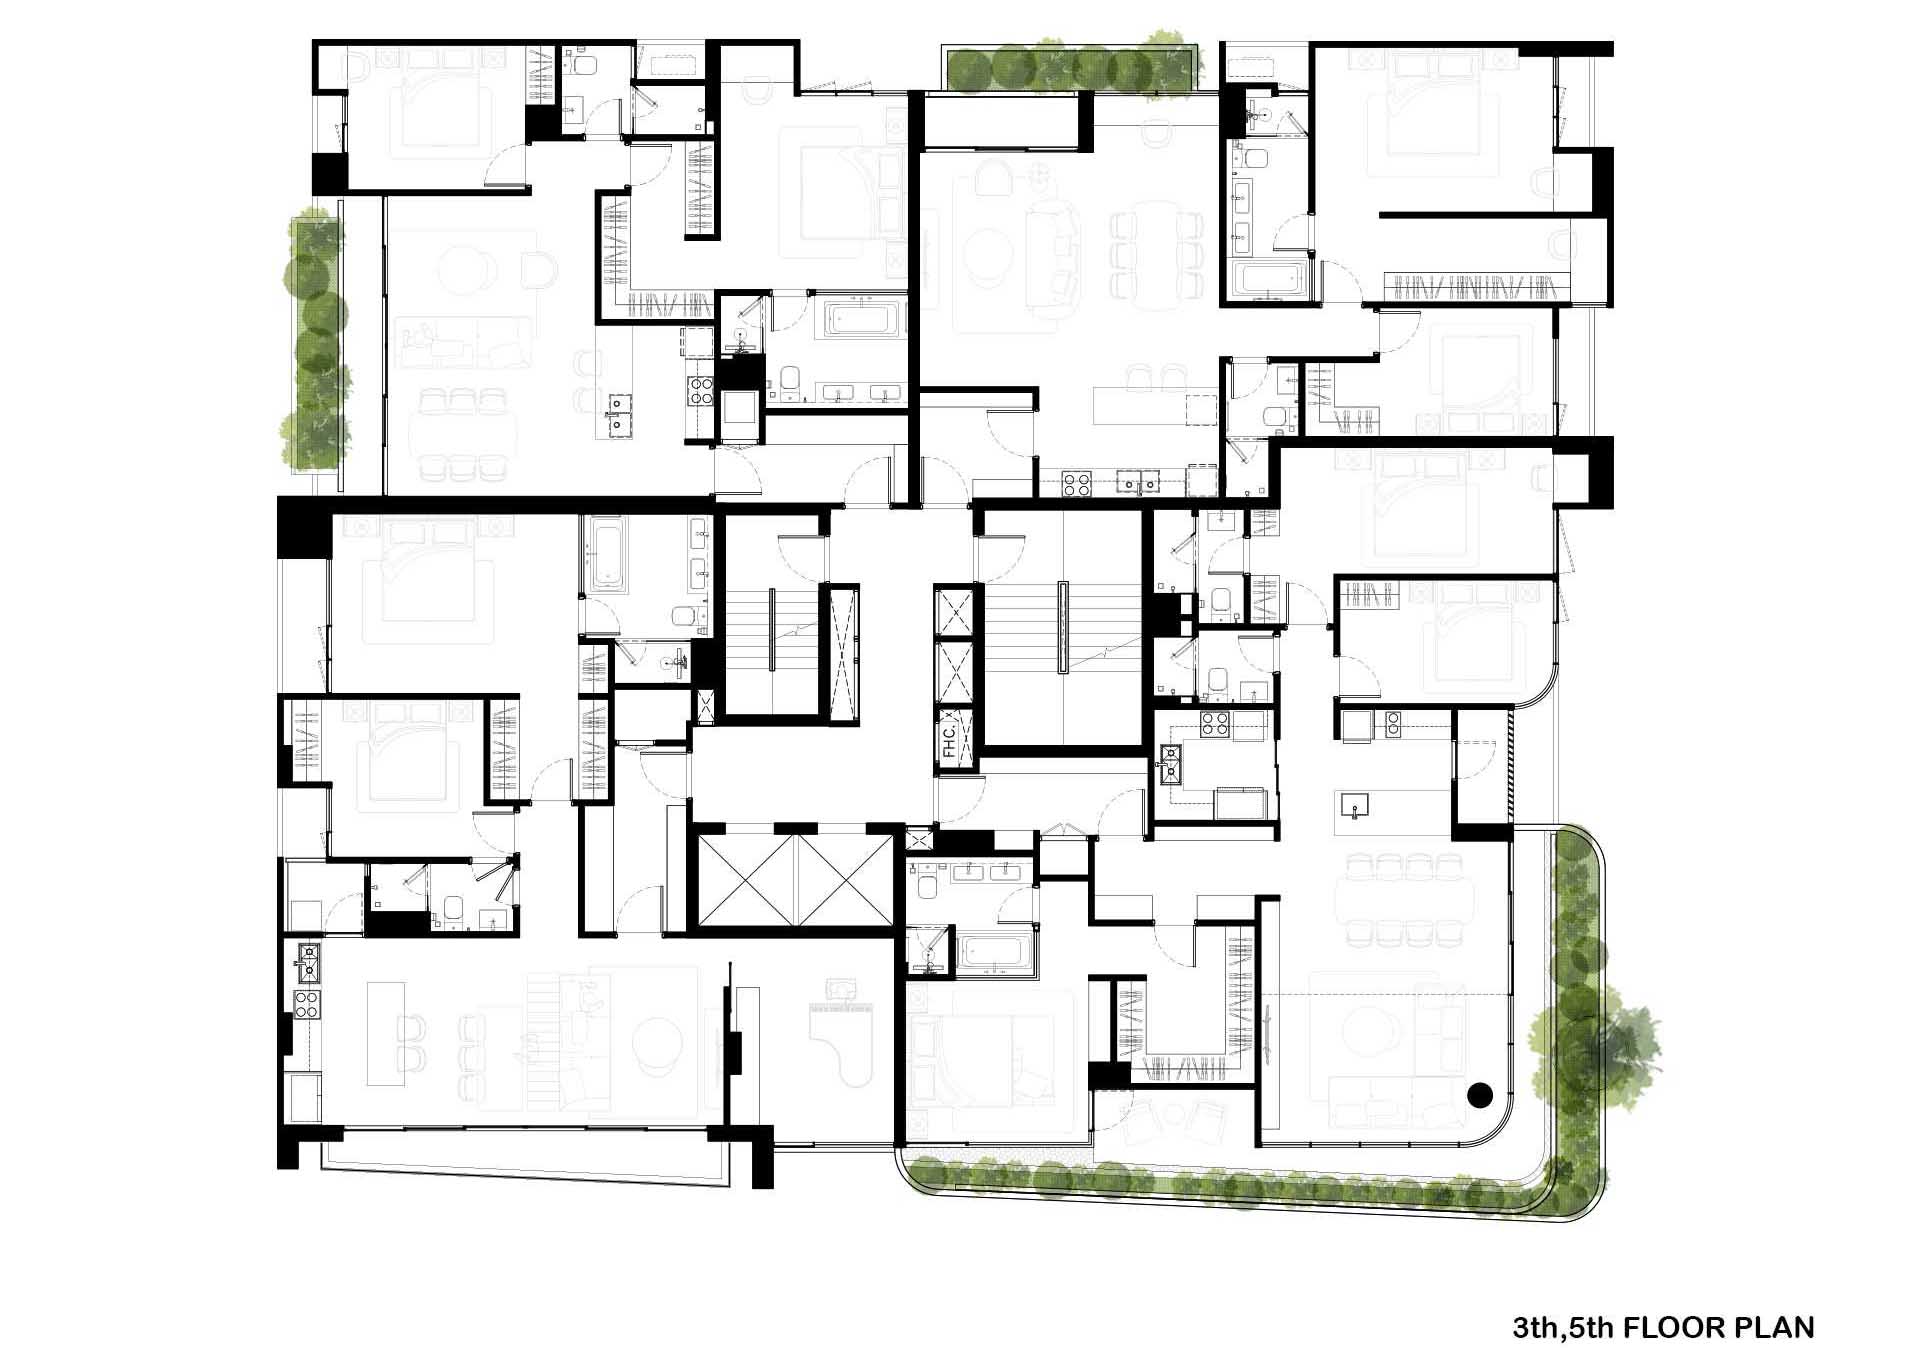 The floor plan of a modern condo building.